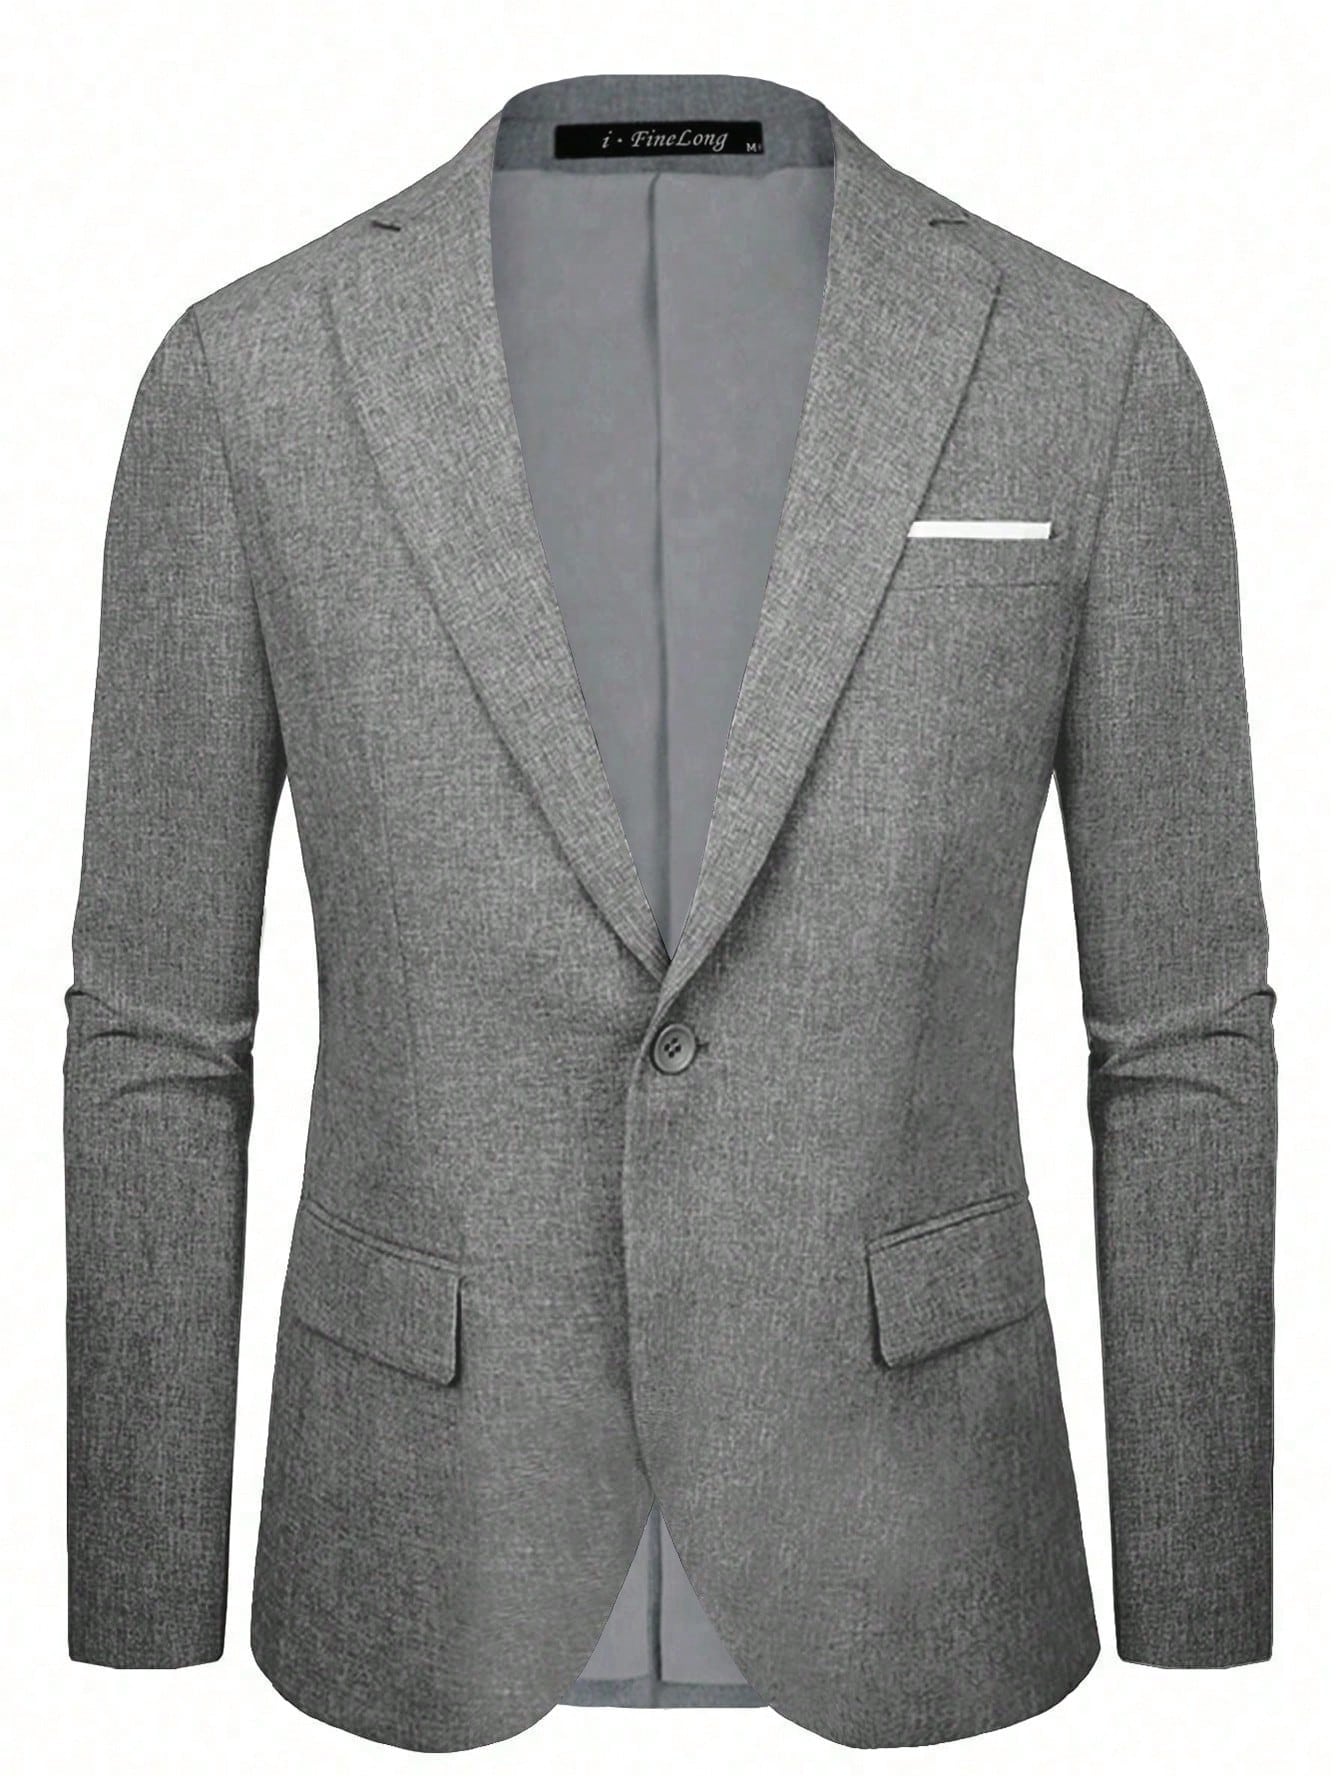 Мужской пиджак на одной пуговице, серый однотонный пиджак на одной пуговице tommy hilfiger цвет rosette